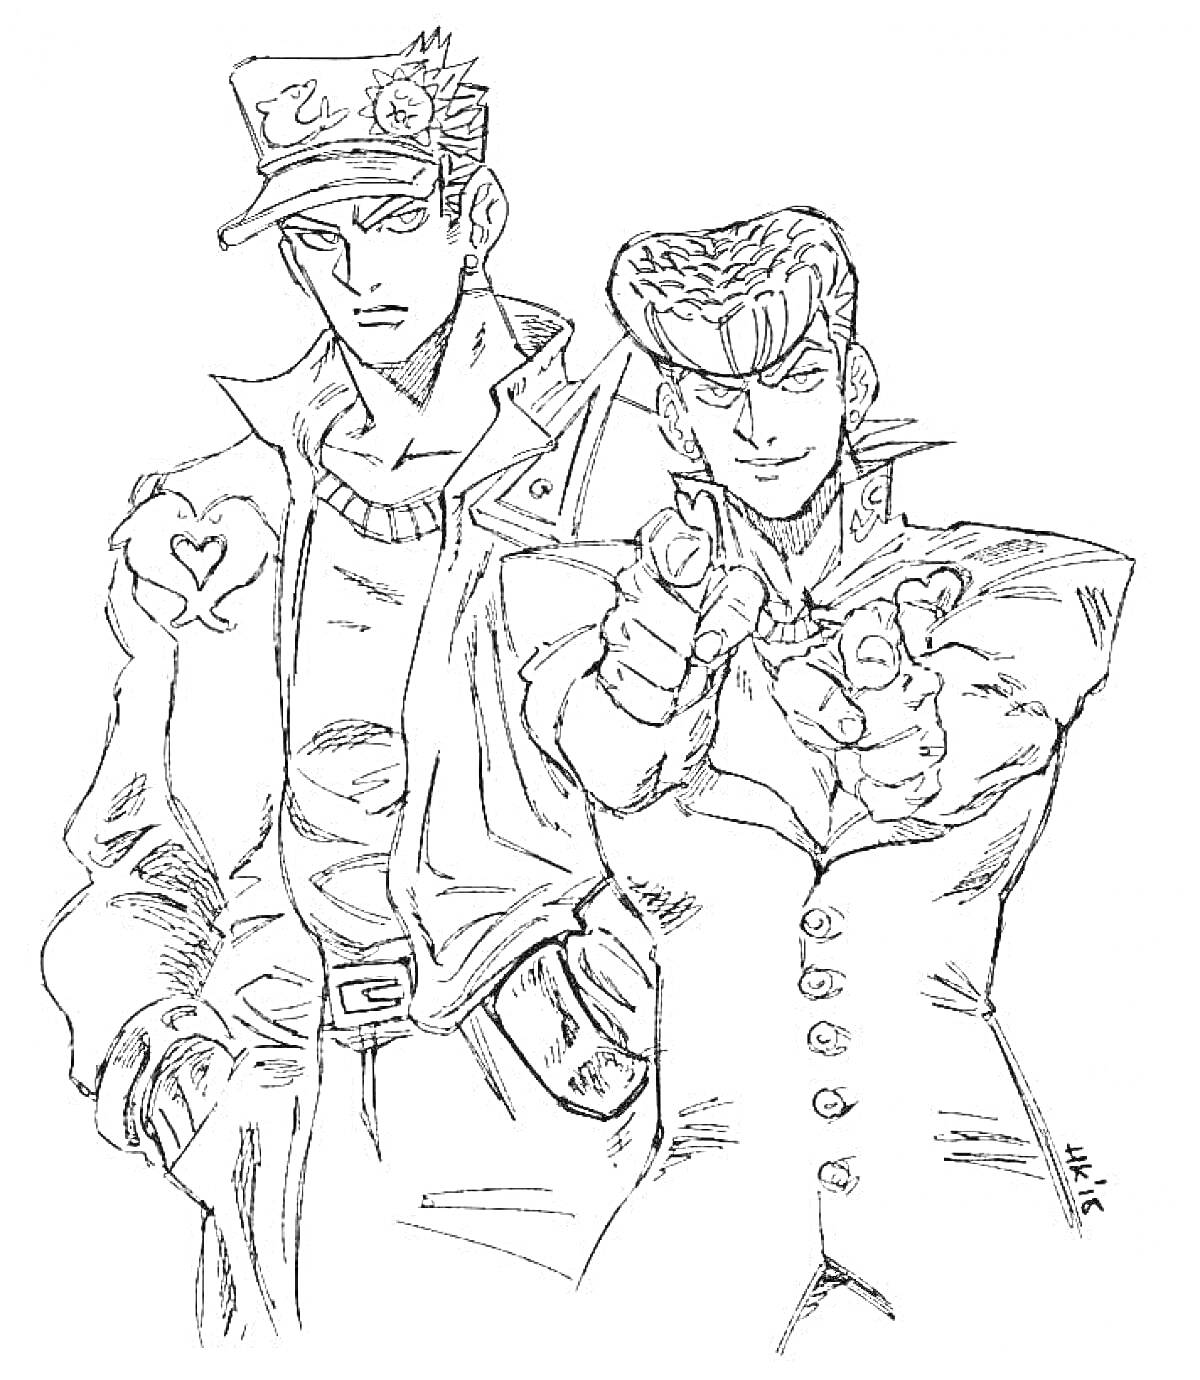 Два персонажа из JoJo's Bizarre Adventure, один стоит с руками в карманах, другой целится пальцем вперед, оба в костюмах с характерными элементами